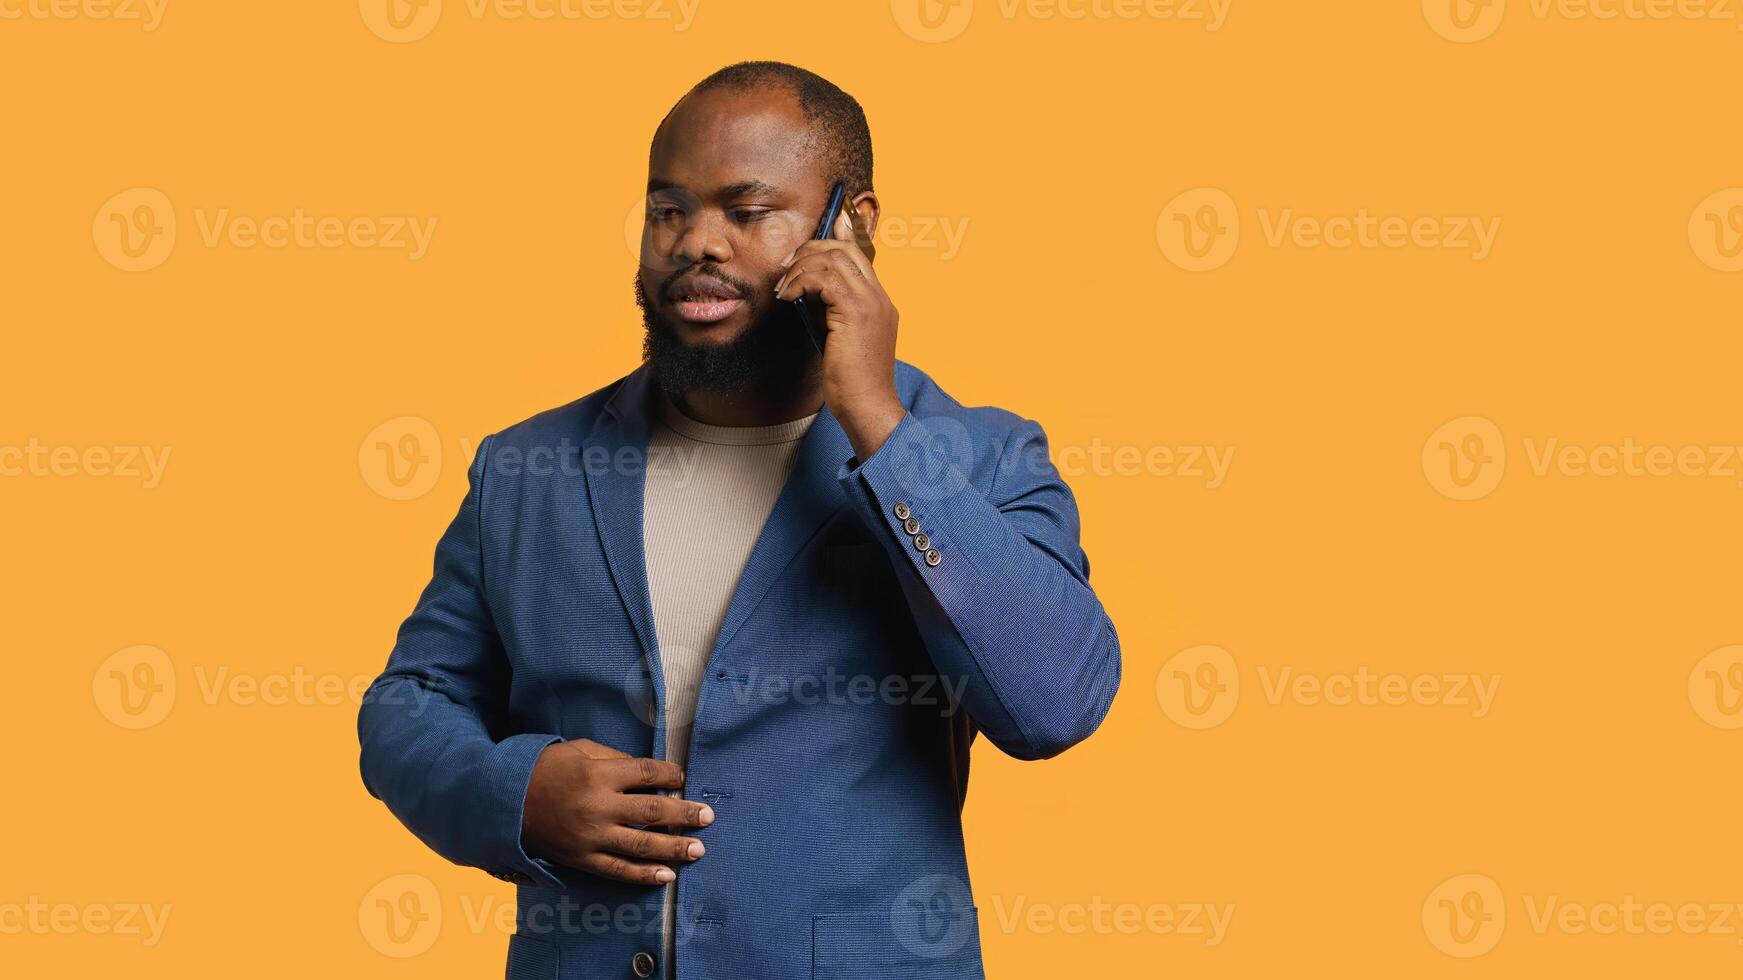 afrikanisch amerikanisch Mann nicht einverstanden mit Freund während Telefon Forderung, zittern Kopf, Studio Hintergrund. bipoc Person reden auf Telefon mit sich paaren, unzufrieden mit Vorschlag, verweigern, Kamera ein foto